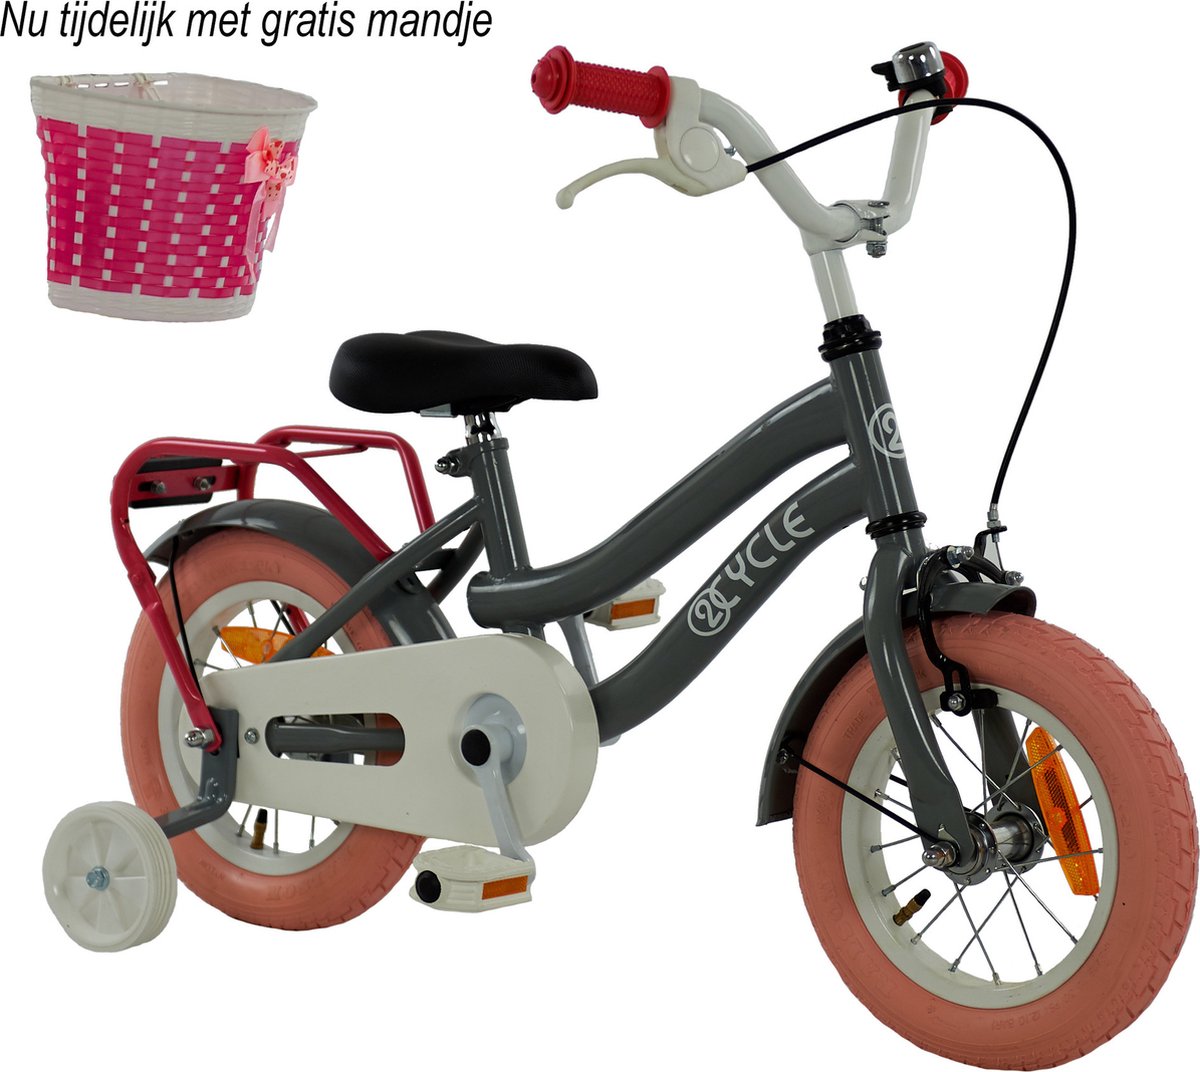 2Cycle Pretty Kinderfiets 12 inch Grijs-Roze Meisjesfiets 12 inch fiets